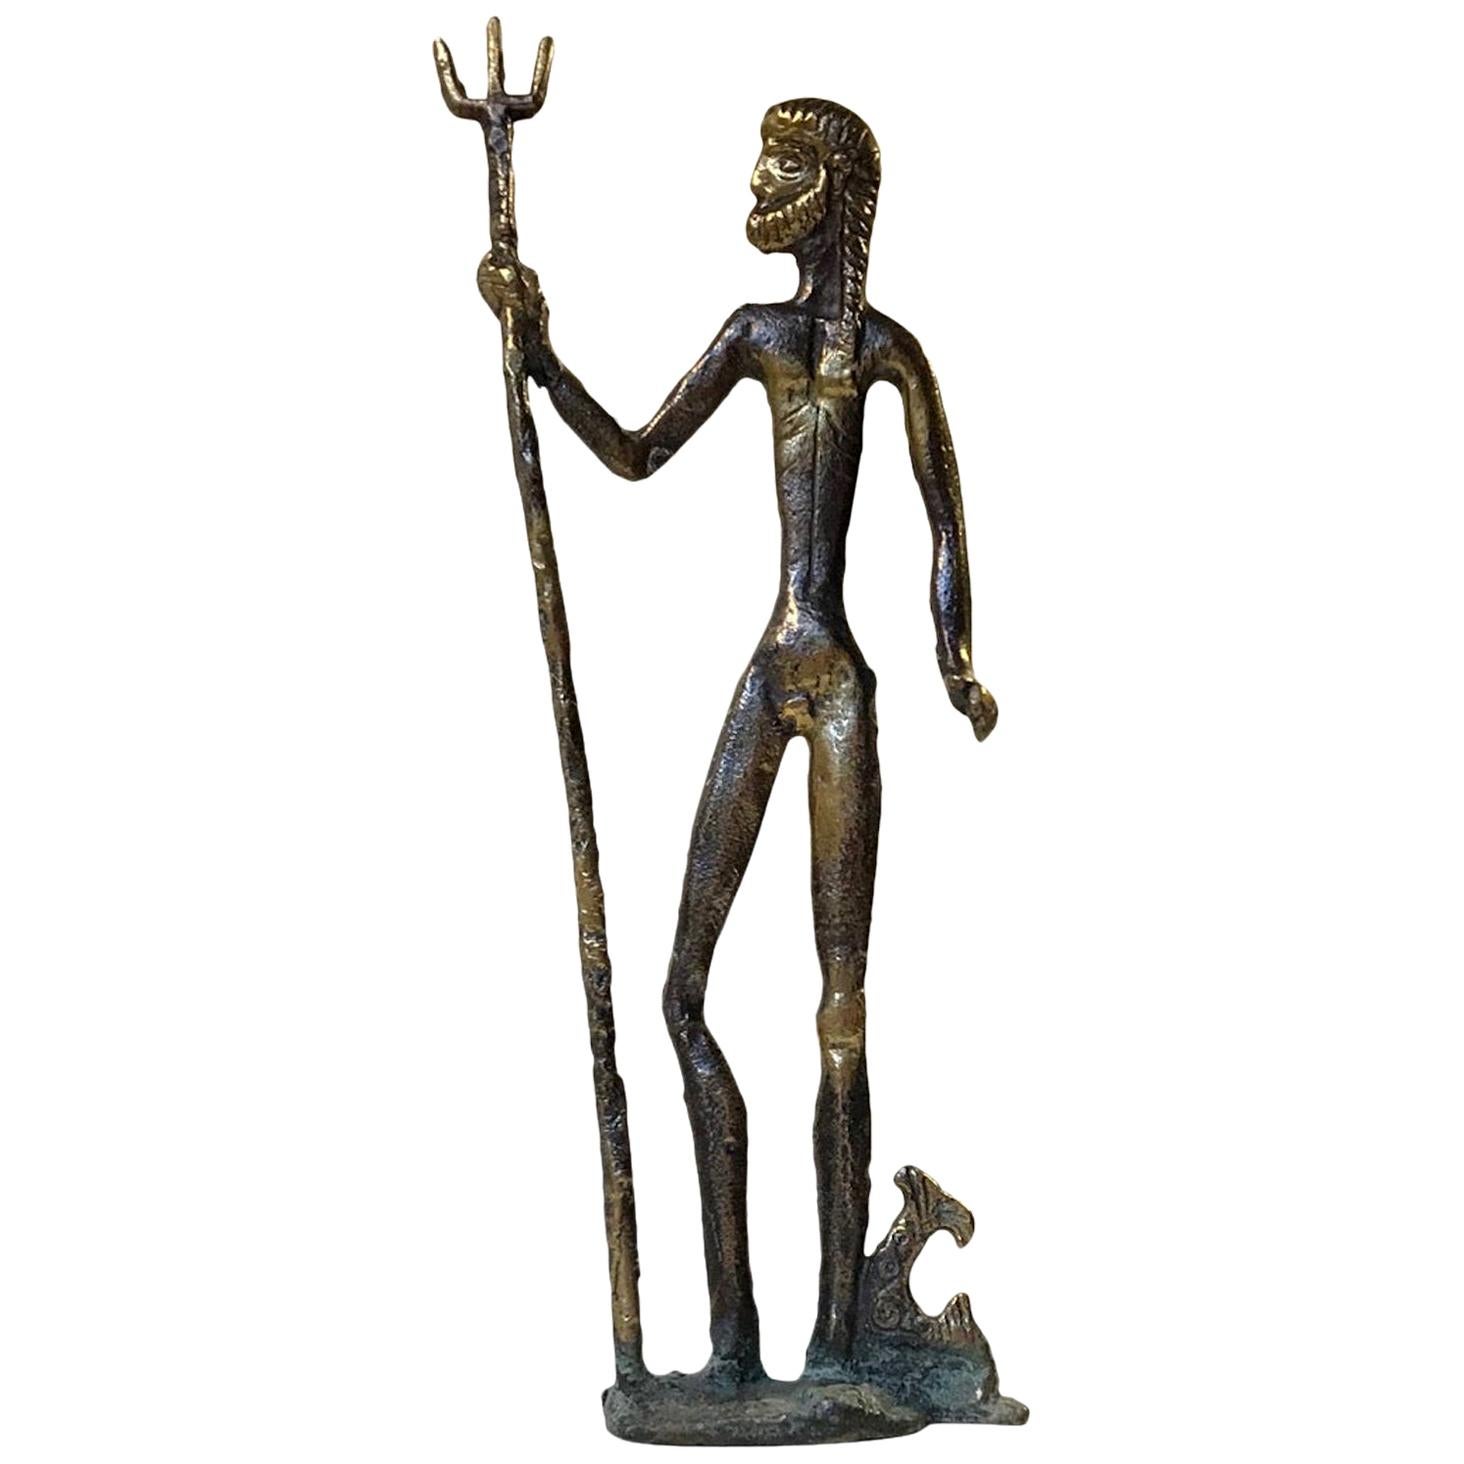 Sculpture vintage en bronze de Naiv représentant Poseidon, dieu mythologique des mers